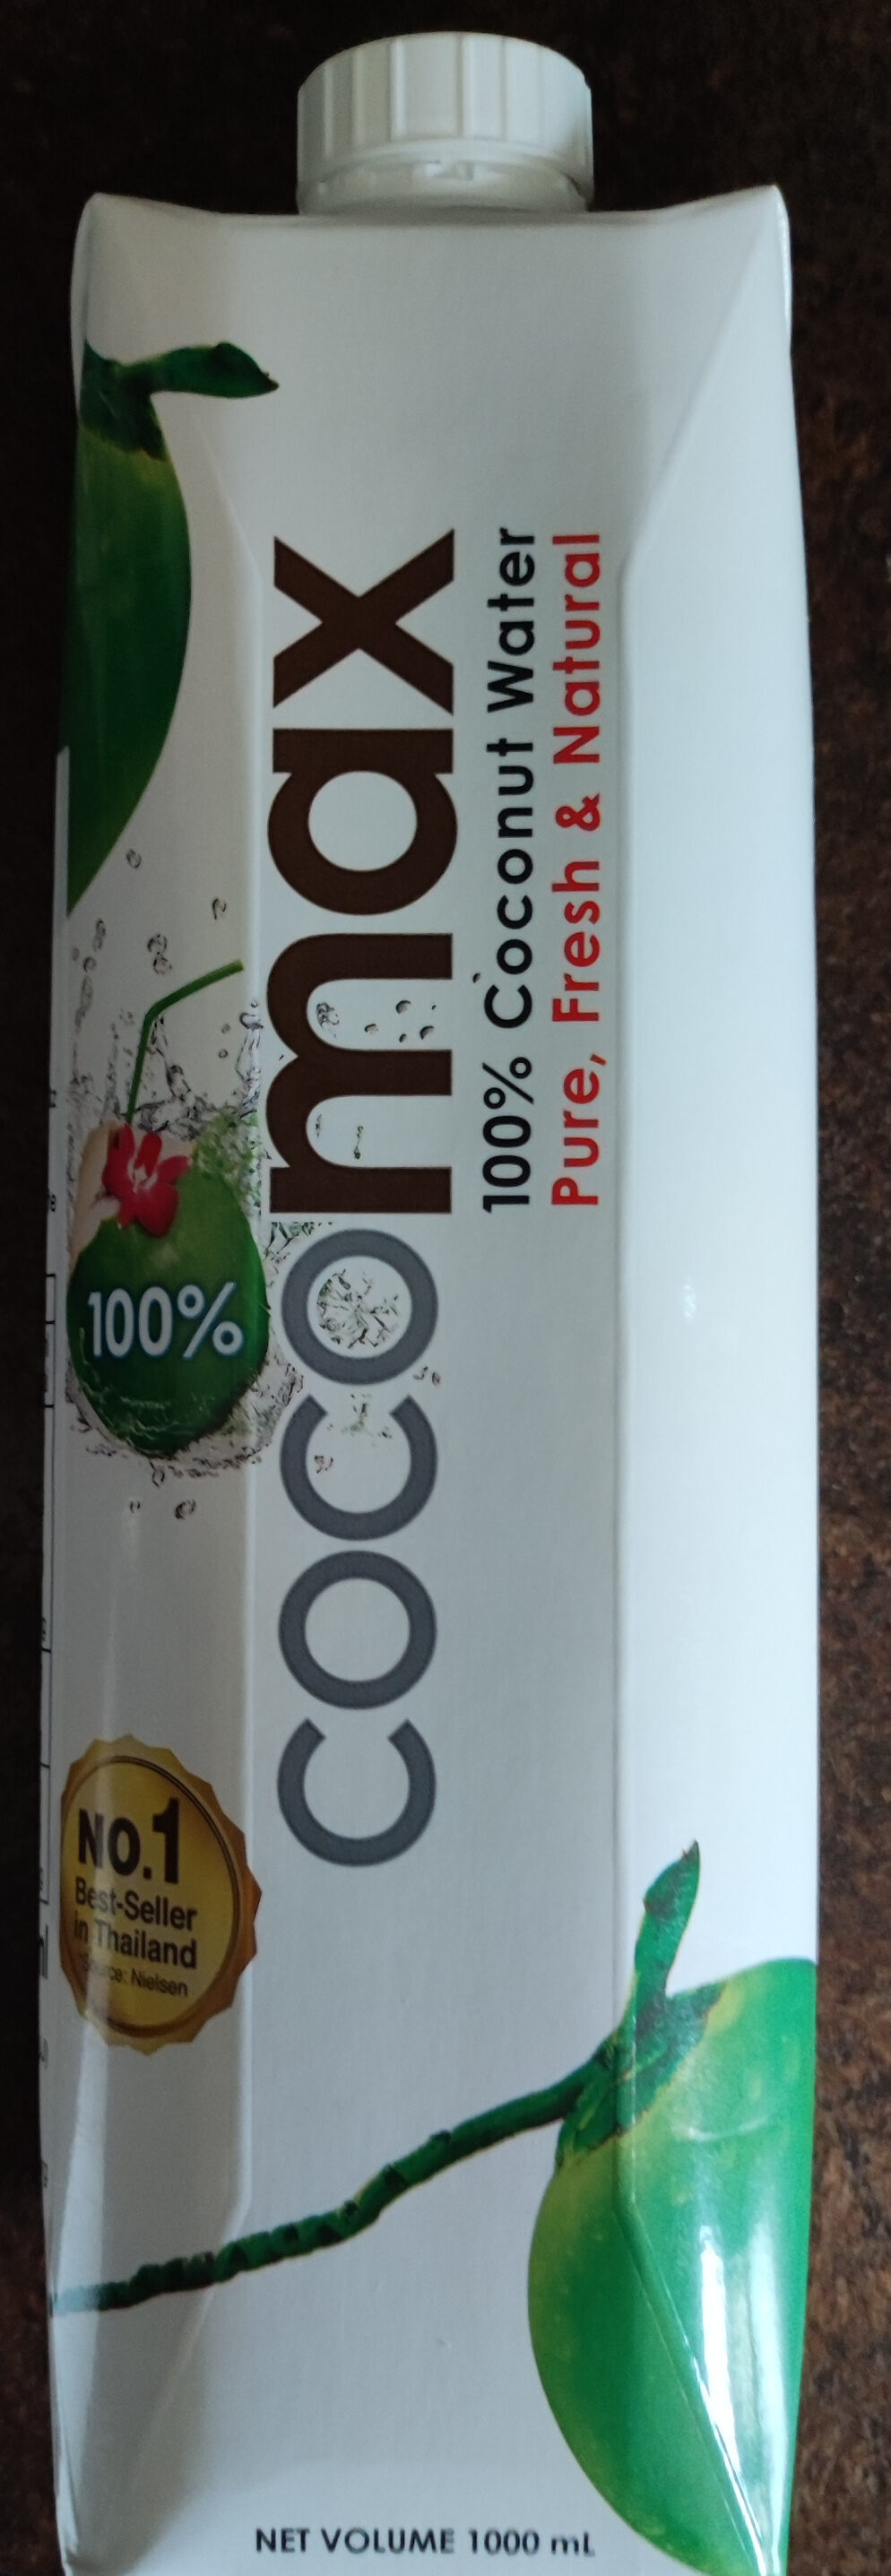 100% Coconut Water - Produkt